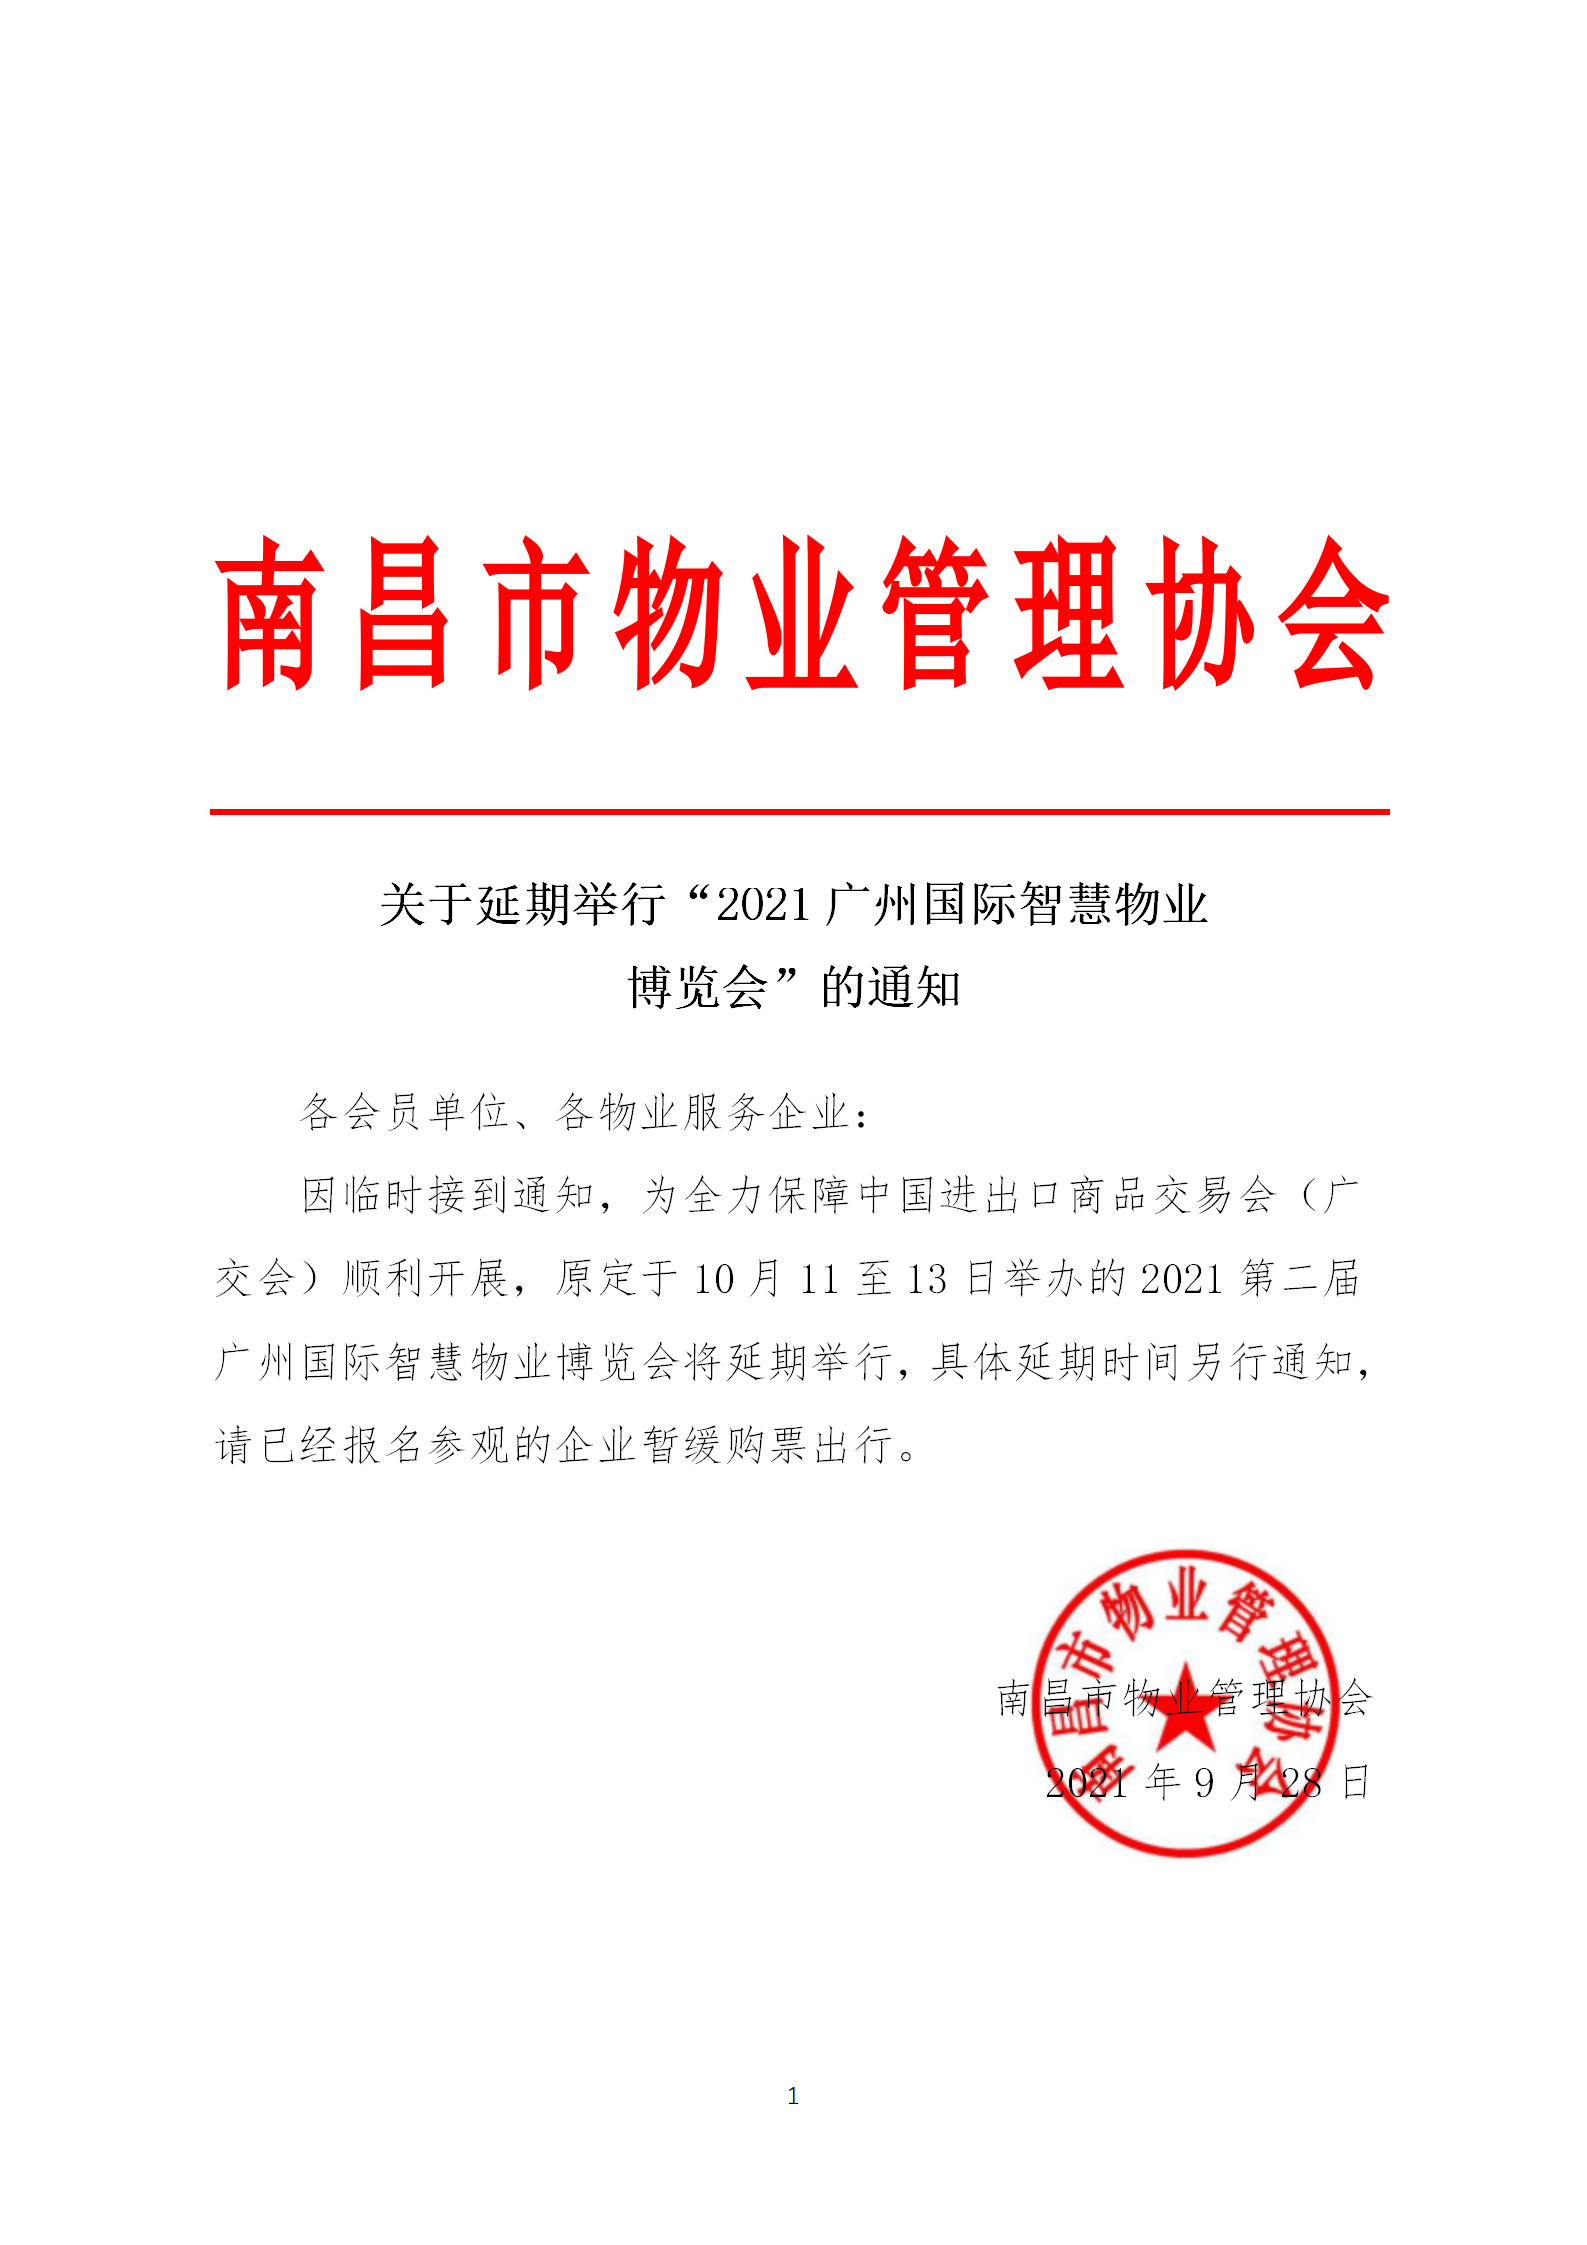 关于延期举行“2021广州国际智慧物业博览会”的通知_01.png